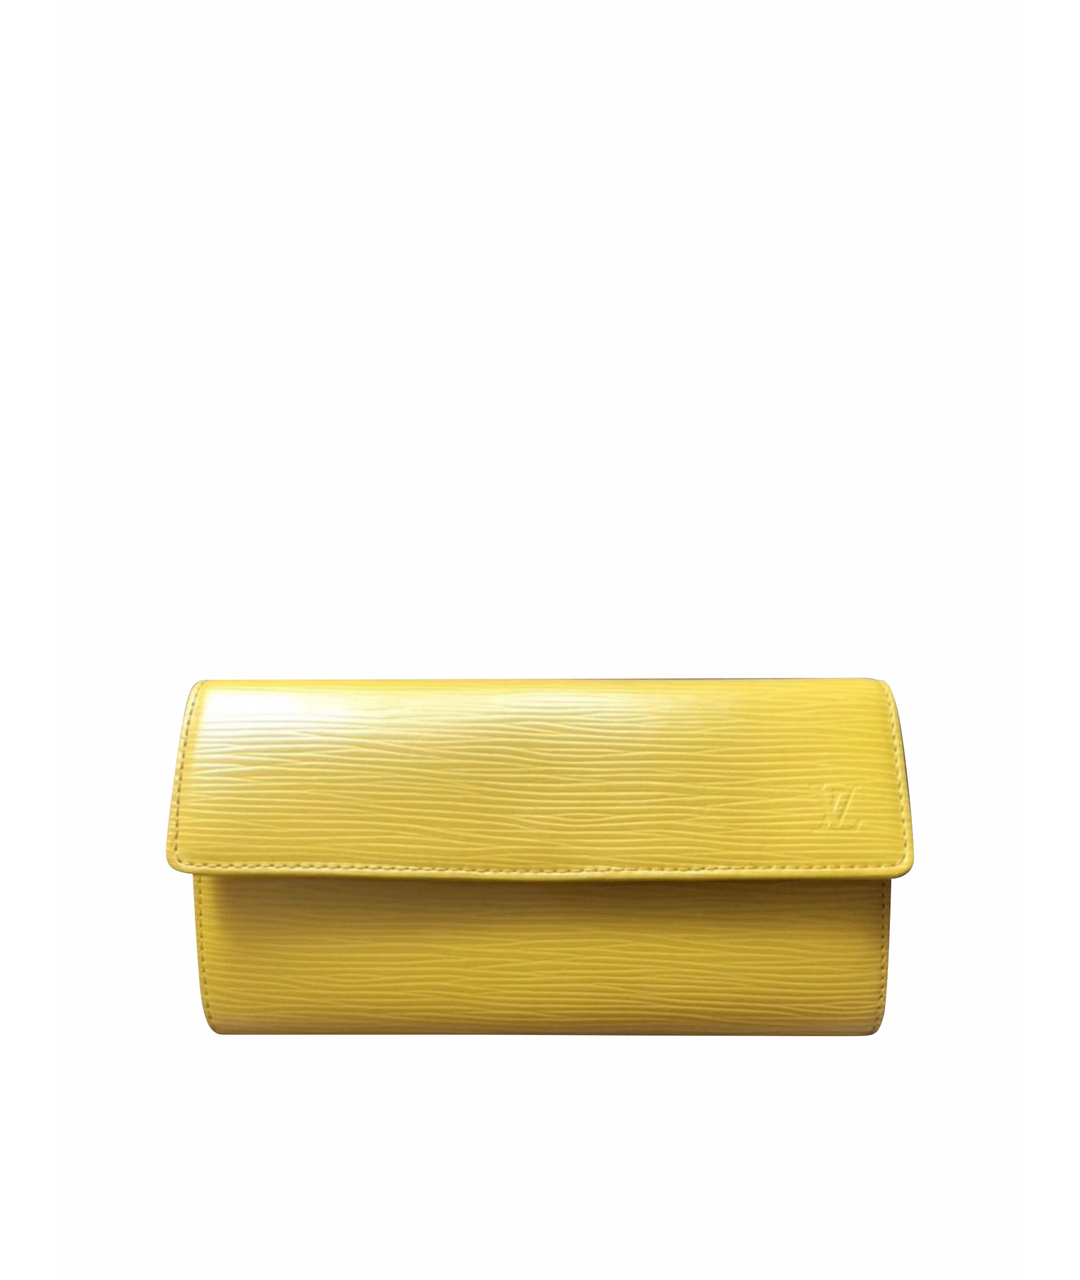 LOUIS VUITTON PRE-OWNED Желтый кожаный кошелек, фото 1